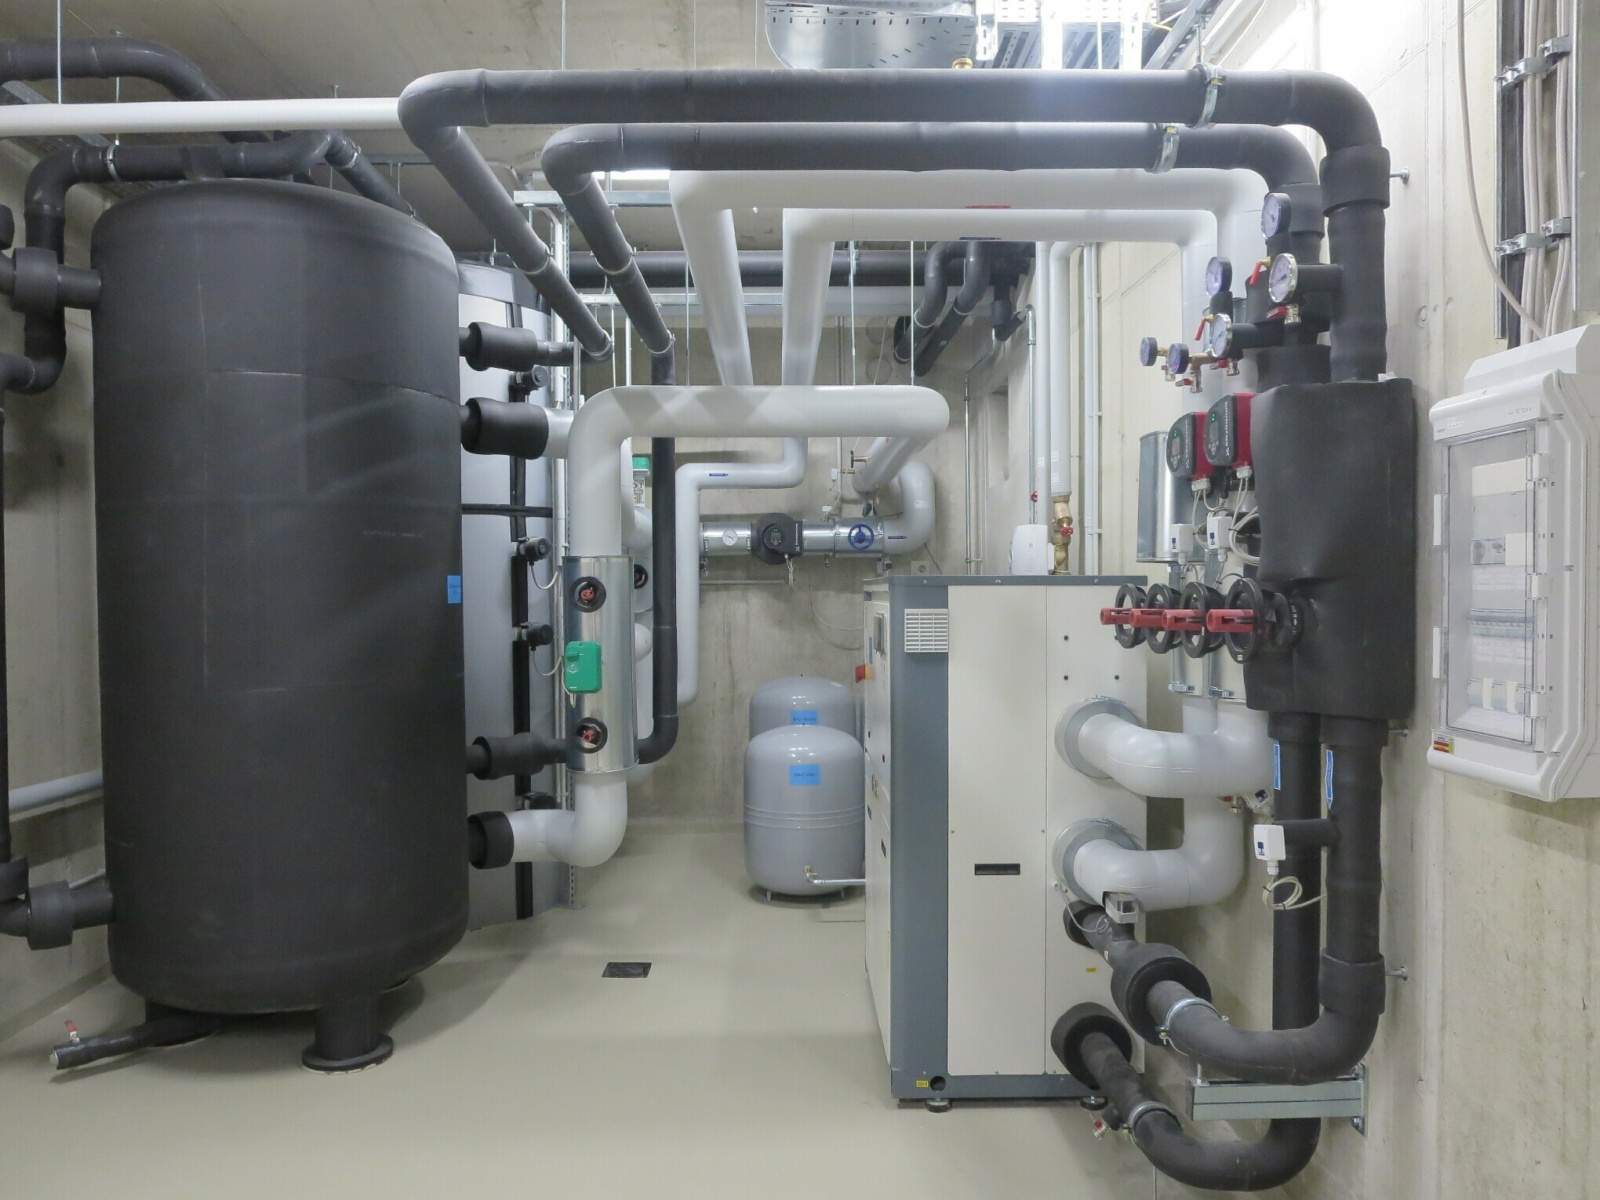 Produktionsstätte LCP, dualer Kaltwassersatz zur gleichzeitigen Wärme- u. Kältenutzung (rechts) 2x 3m³ Heizungs- u. Kälte Pufferspeicher (links), Bild: Tom Lattermann